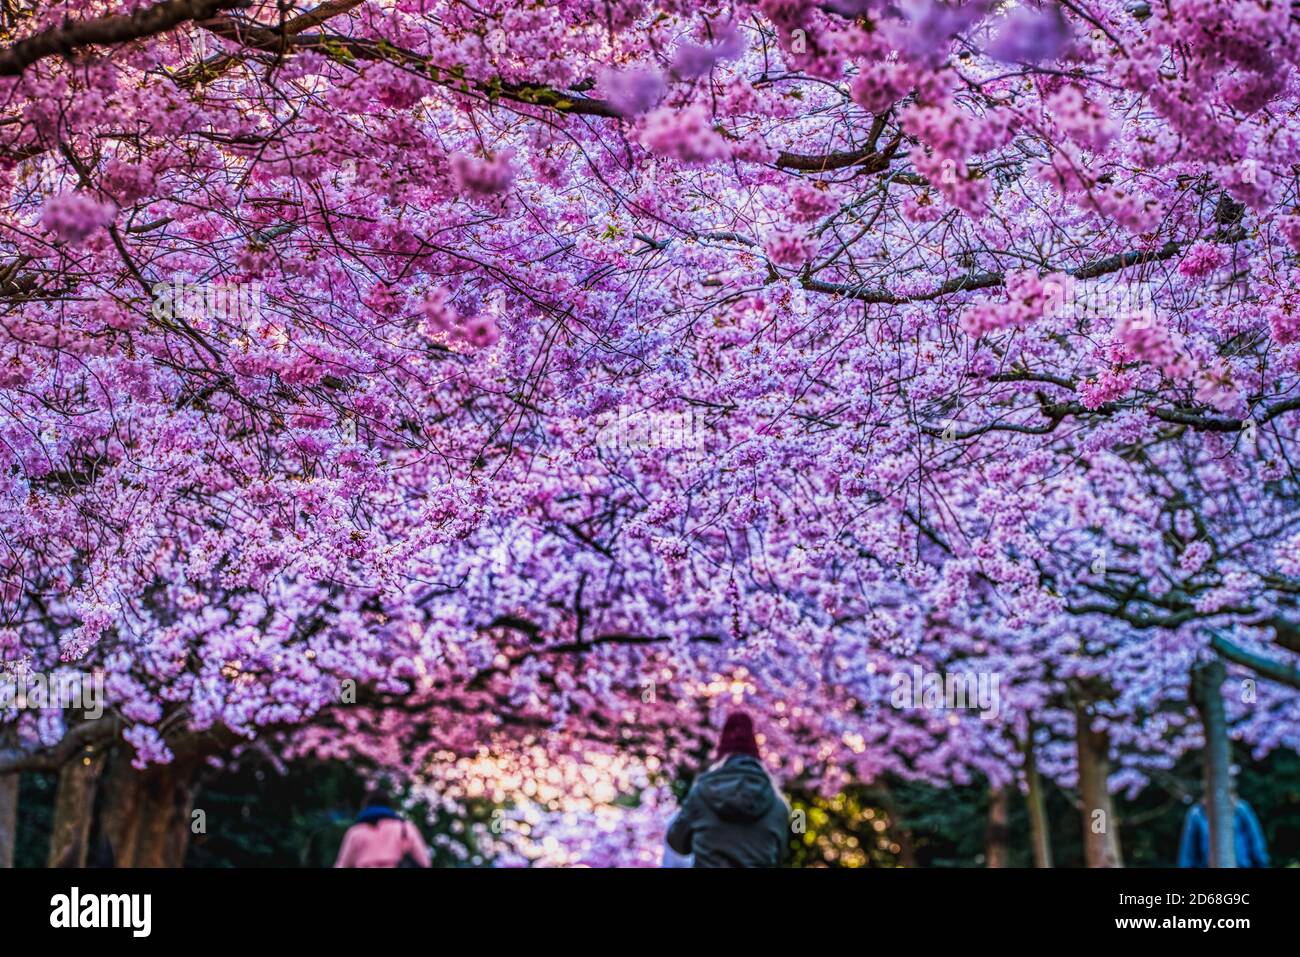 Sakura floreciendo con intenso color rosa exuberante oso renovación y renacimiento. El patrón de flores de cerezo rosa es lujoso, mientras que la gente admira el callejón de cerezo rosa Foto de stock